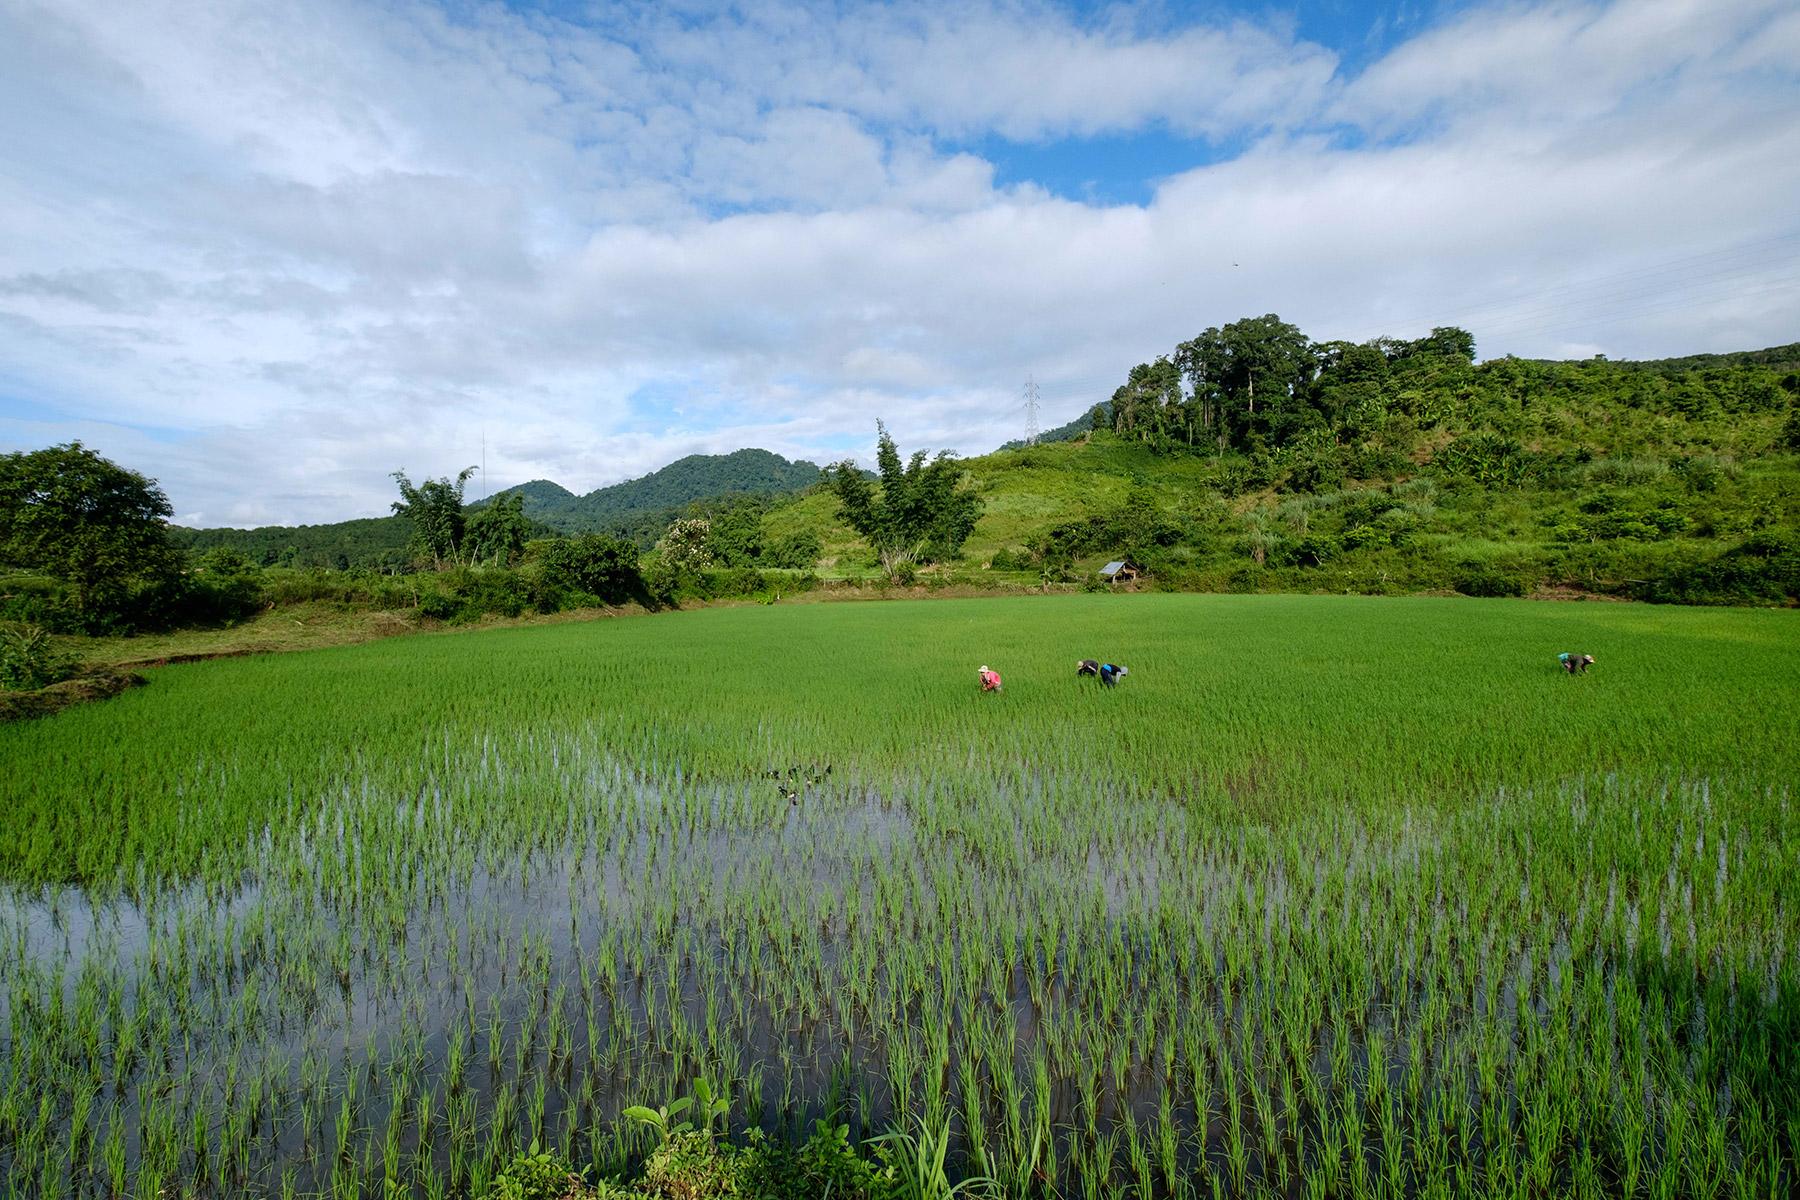 Landwirte entfernen Unkraut auf einem Reisfeld in Laos. In den meisten asiatischen Ländern ist Reis sowohl ein wichtiges Grundnahrungsmittel als auch eine wichtige Lebensgrundlage. Foto: Thomas Lohnes